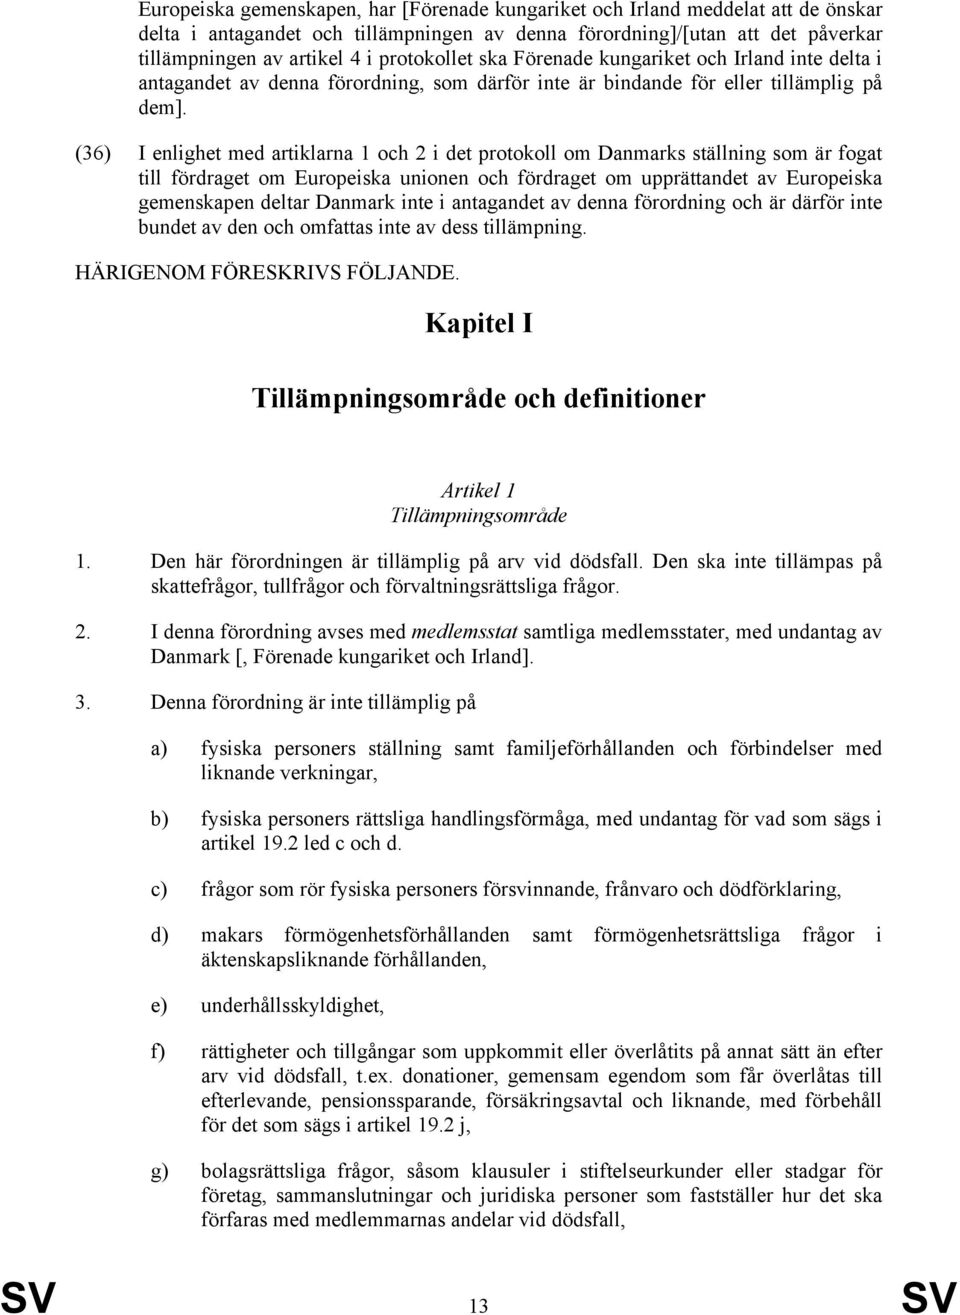 (36) I enlighet med artiklarna 1 och 2 i det protokoll om Danmarks ställning som är fogat till fördraget om Europeiska unionen och fördraget om upprättandet av Europeiska gemenskapen deltar Danmark